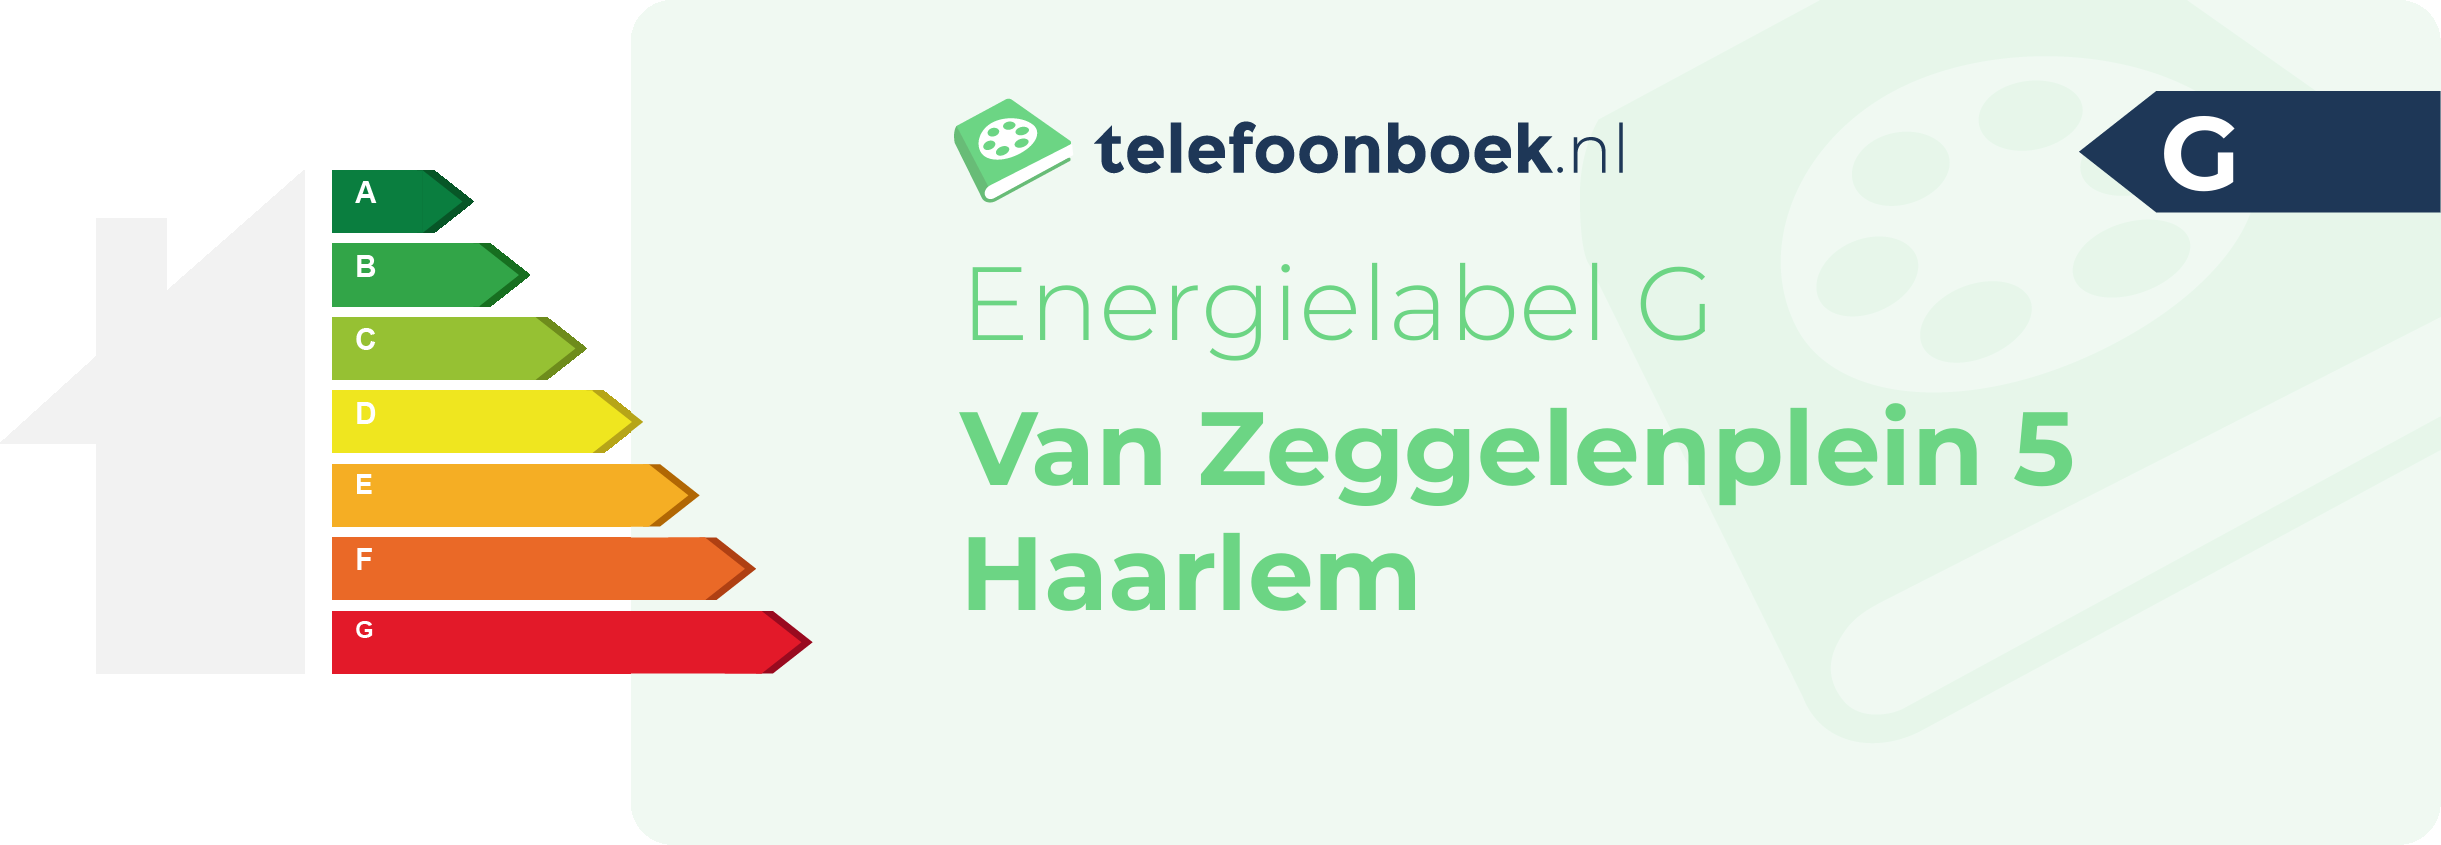 Energielabel Van Zeggelenplein 5 Haarlem